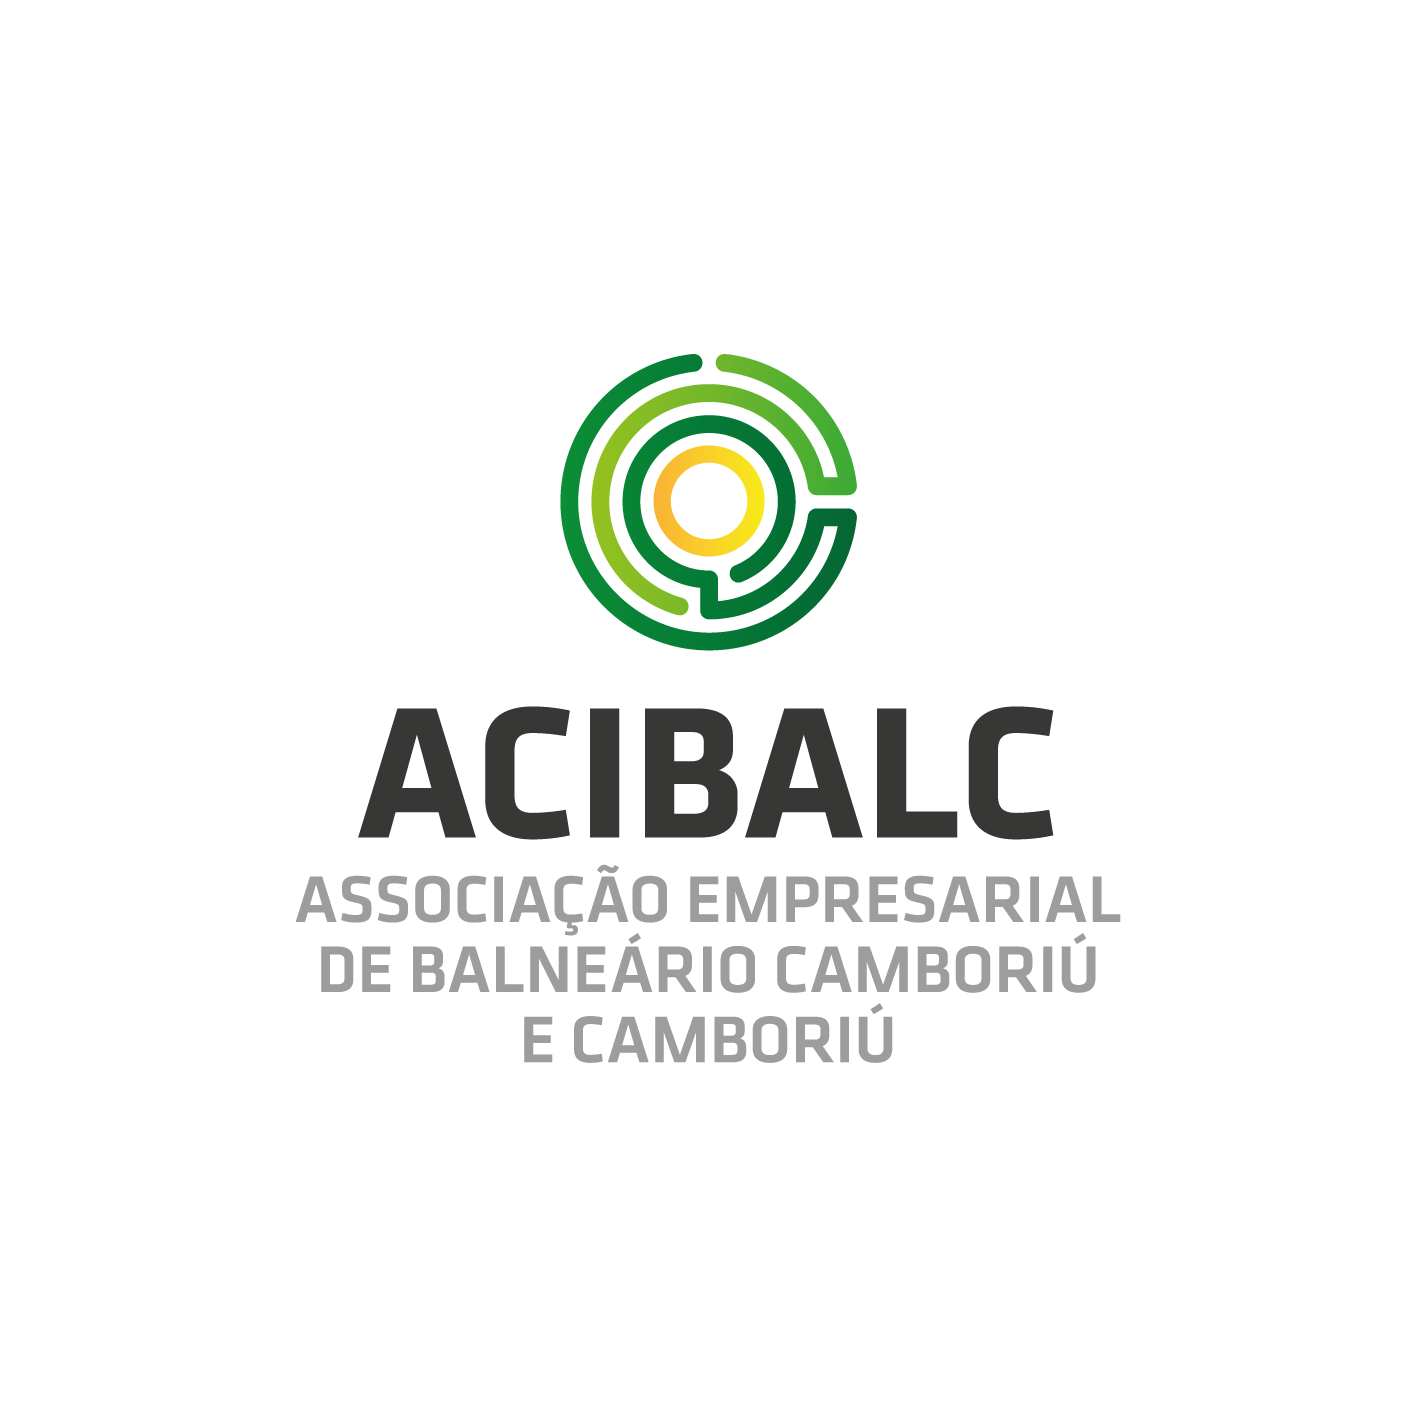 Acibalc - Associação Empresarial de Balneário Camboriú e Camboriú